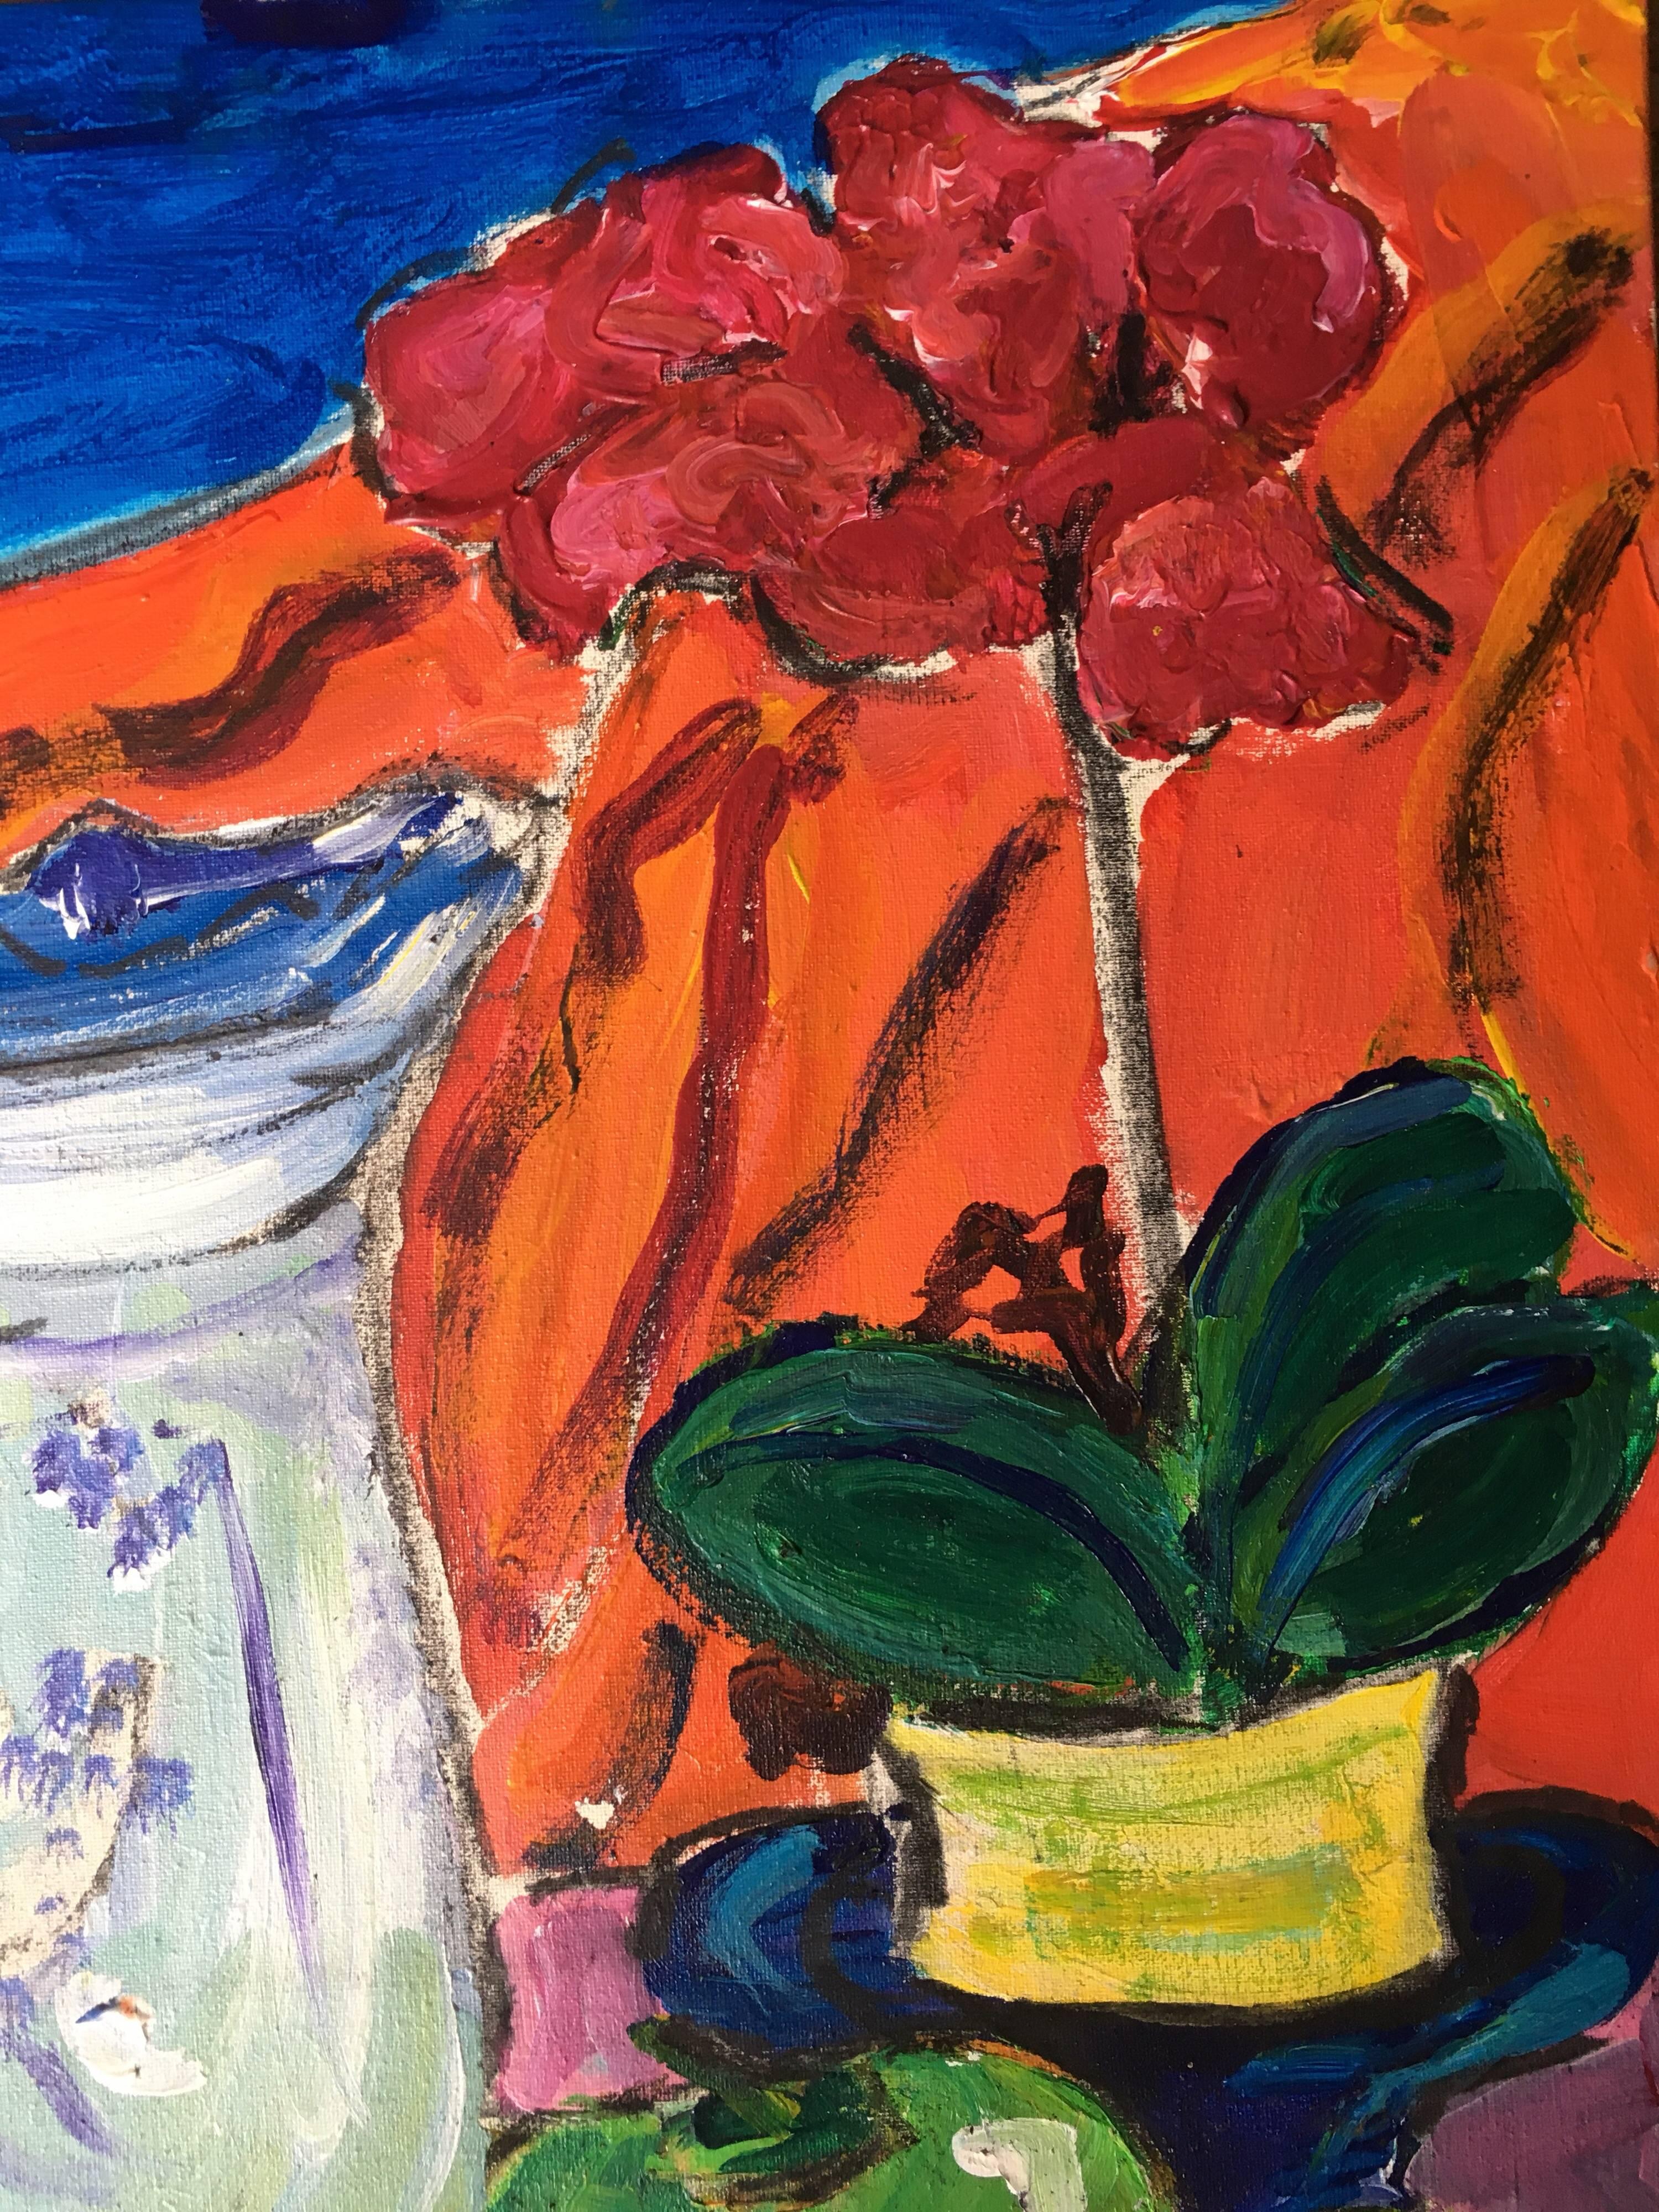 Stillleben, Obst, Blumen und klassischer Krug, farbenfrohes Ölgemälde
von Pamela Cawley, Britin, 20. Jahrhundert
ölgemälde auf Karton, ungerahmt
brett: 18 x 15 Zoll 

Beeindruckendes originales impressionistisches Ölgemälde der britischen Künstlerin